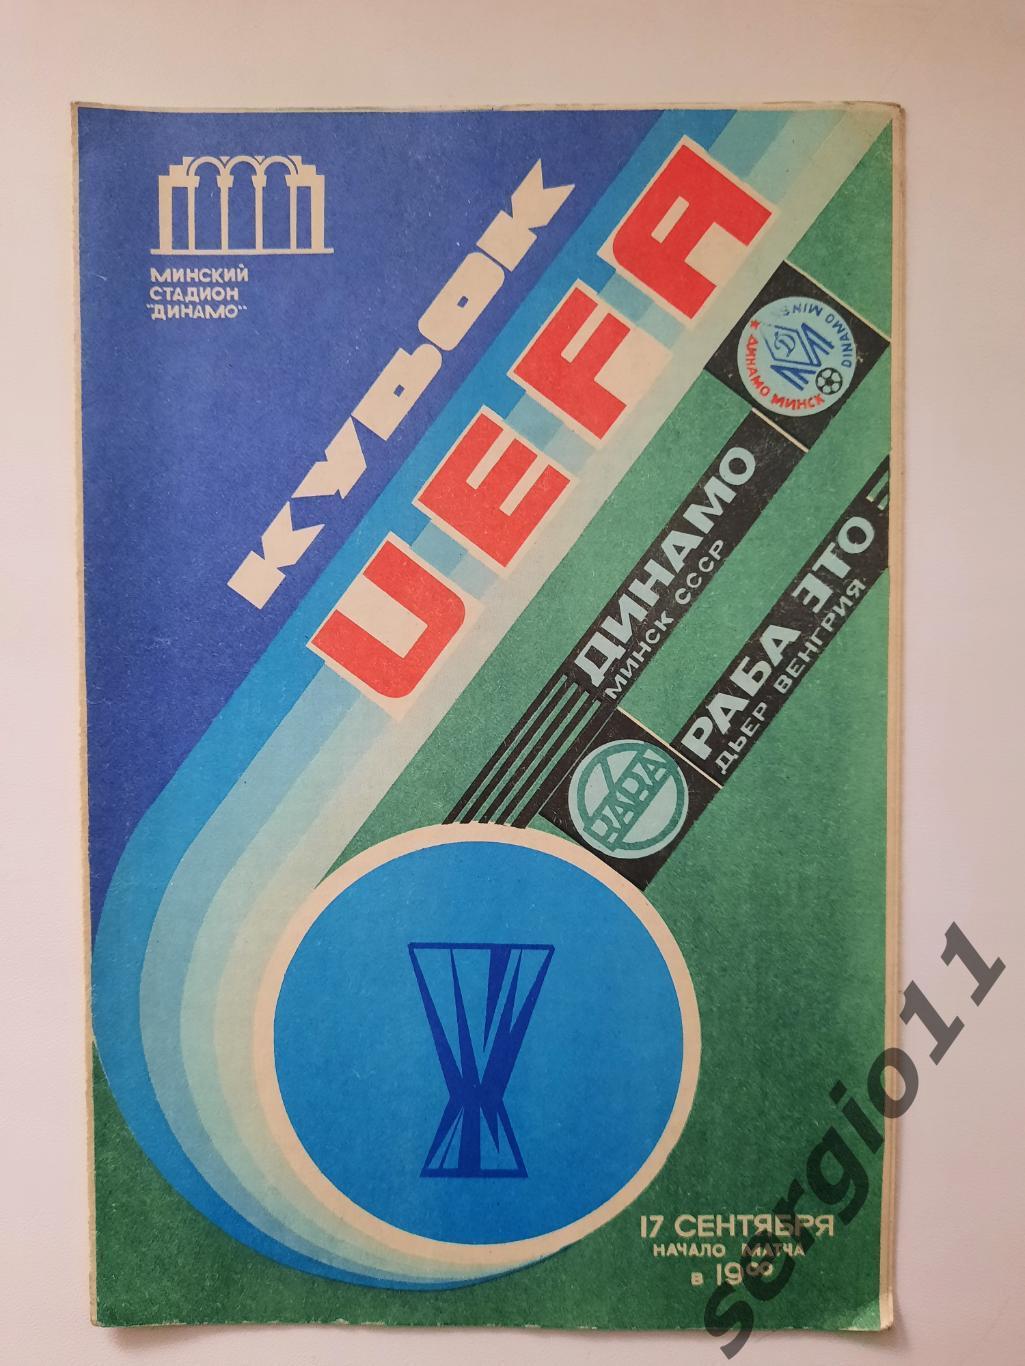 Динамо Минск - Раба Это Венгрия 17.09.1986 г. 1/32 финала Кубка УЕФА